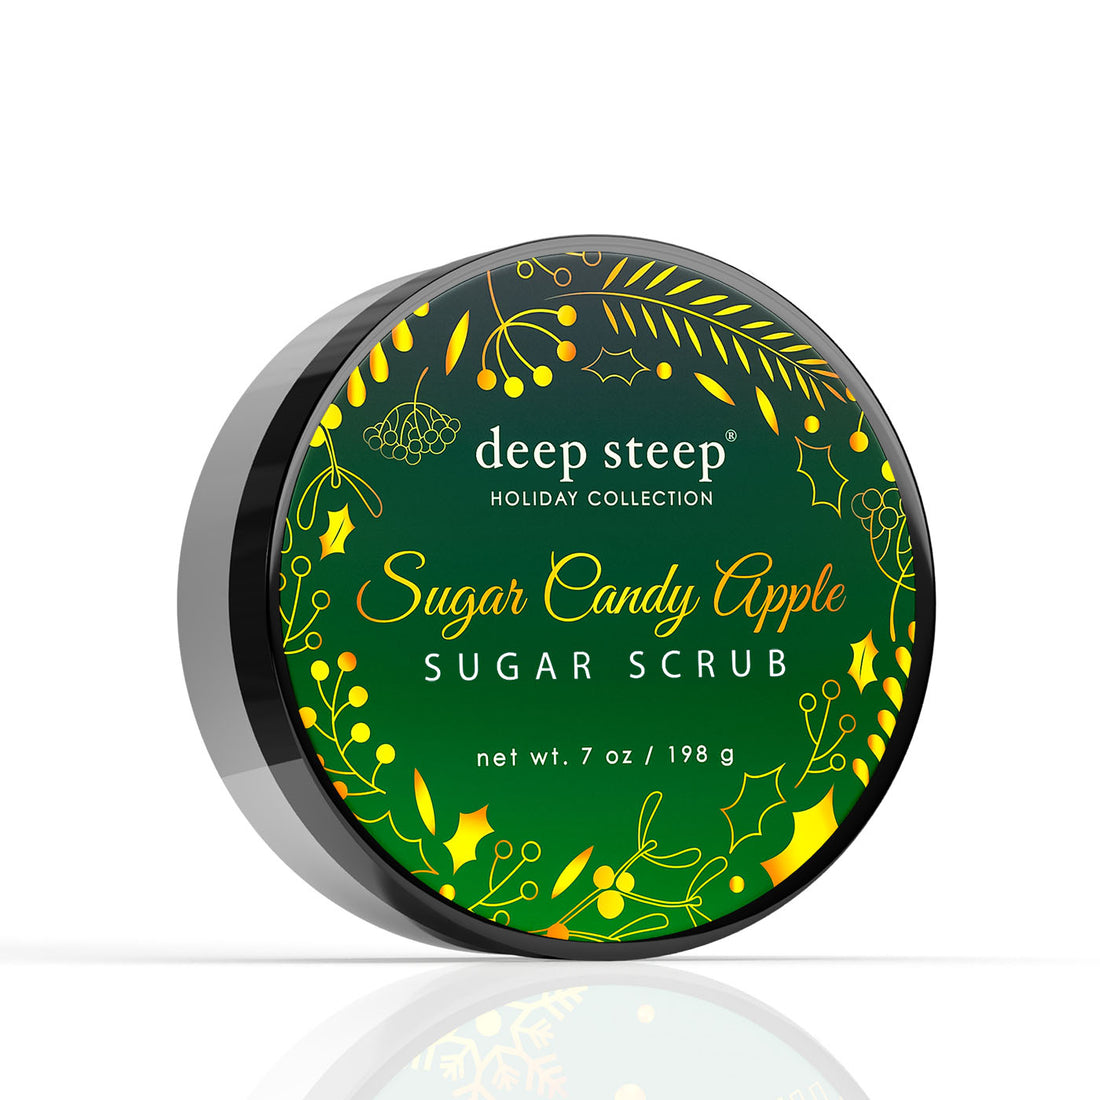 Holiday Sugar Scrub - Sugar Candy Apple